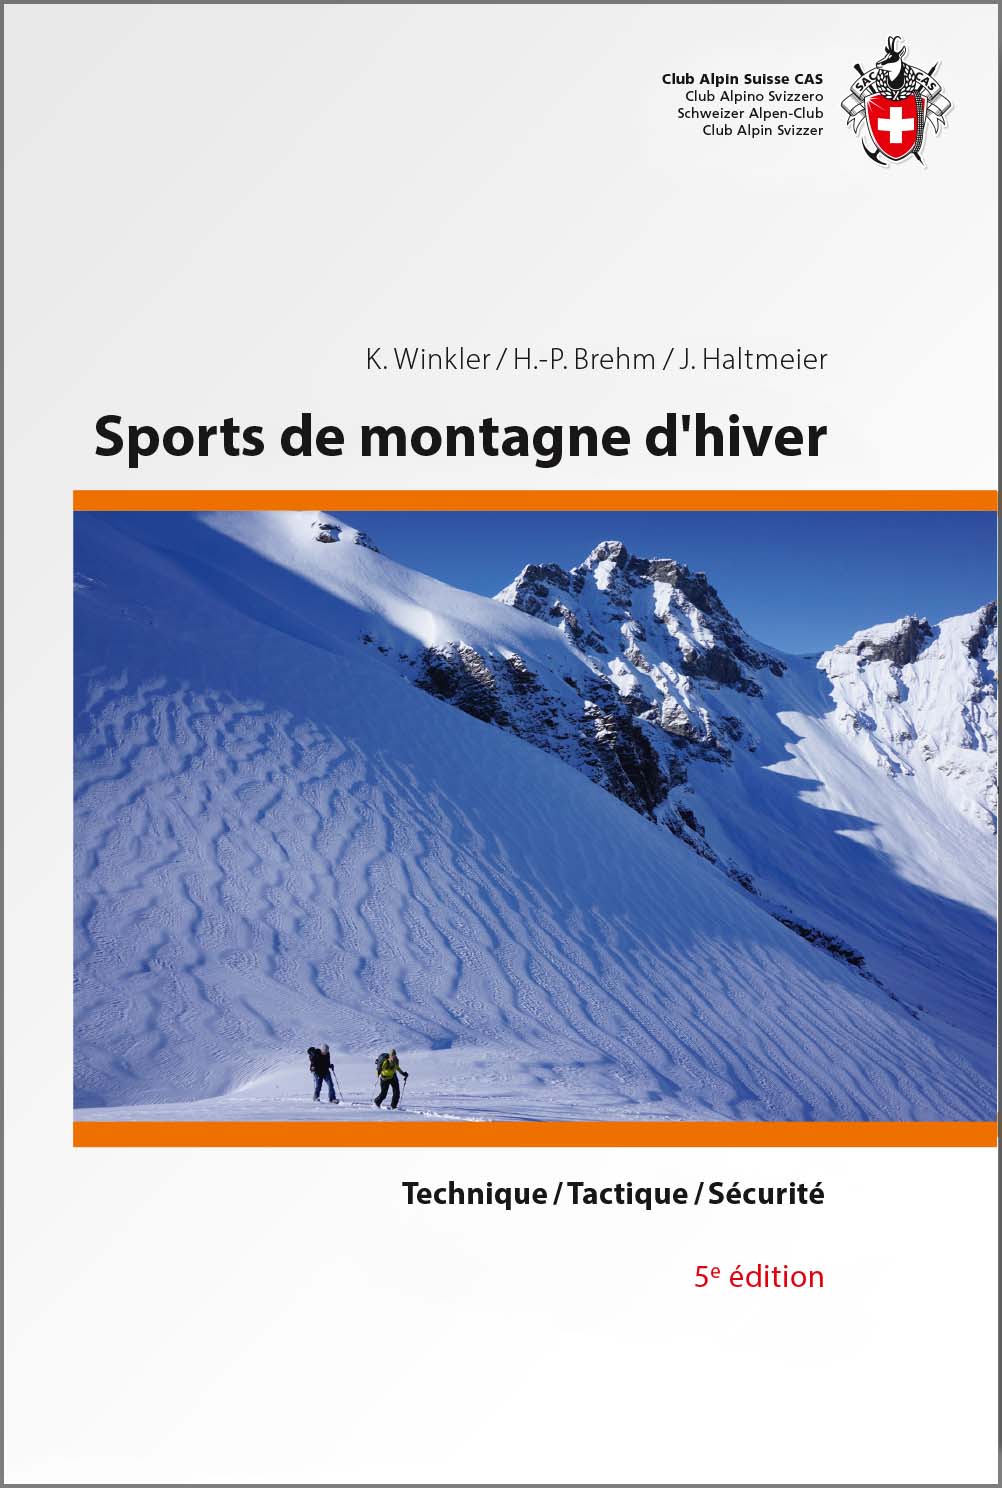 Guide - Sports de montagne d'hiver : technique, tactique, sécurité | SAC - Club Alpin Suisse guide de randonnée SAC - Club Alpin Suisse 